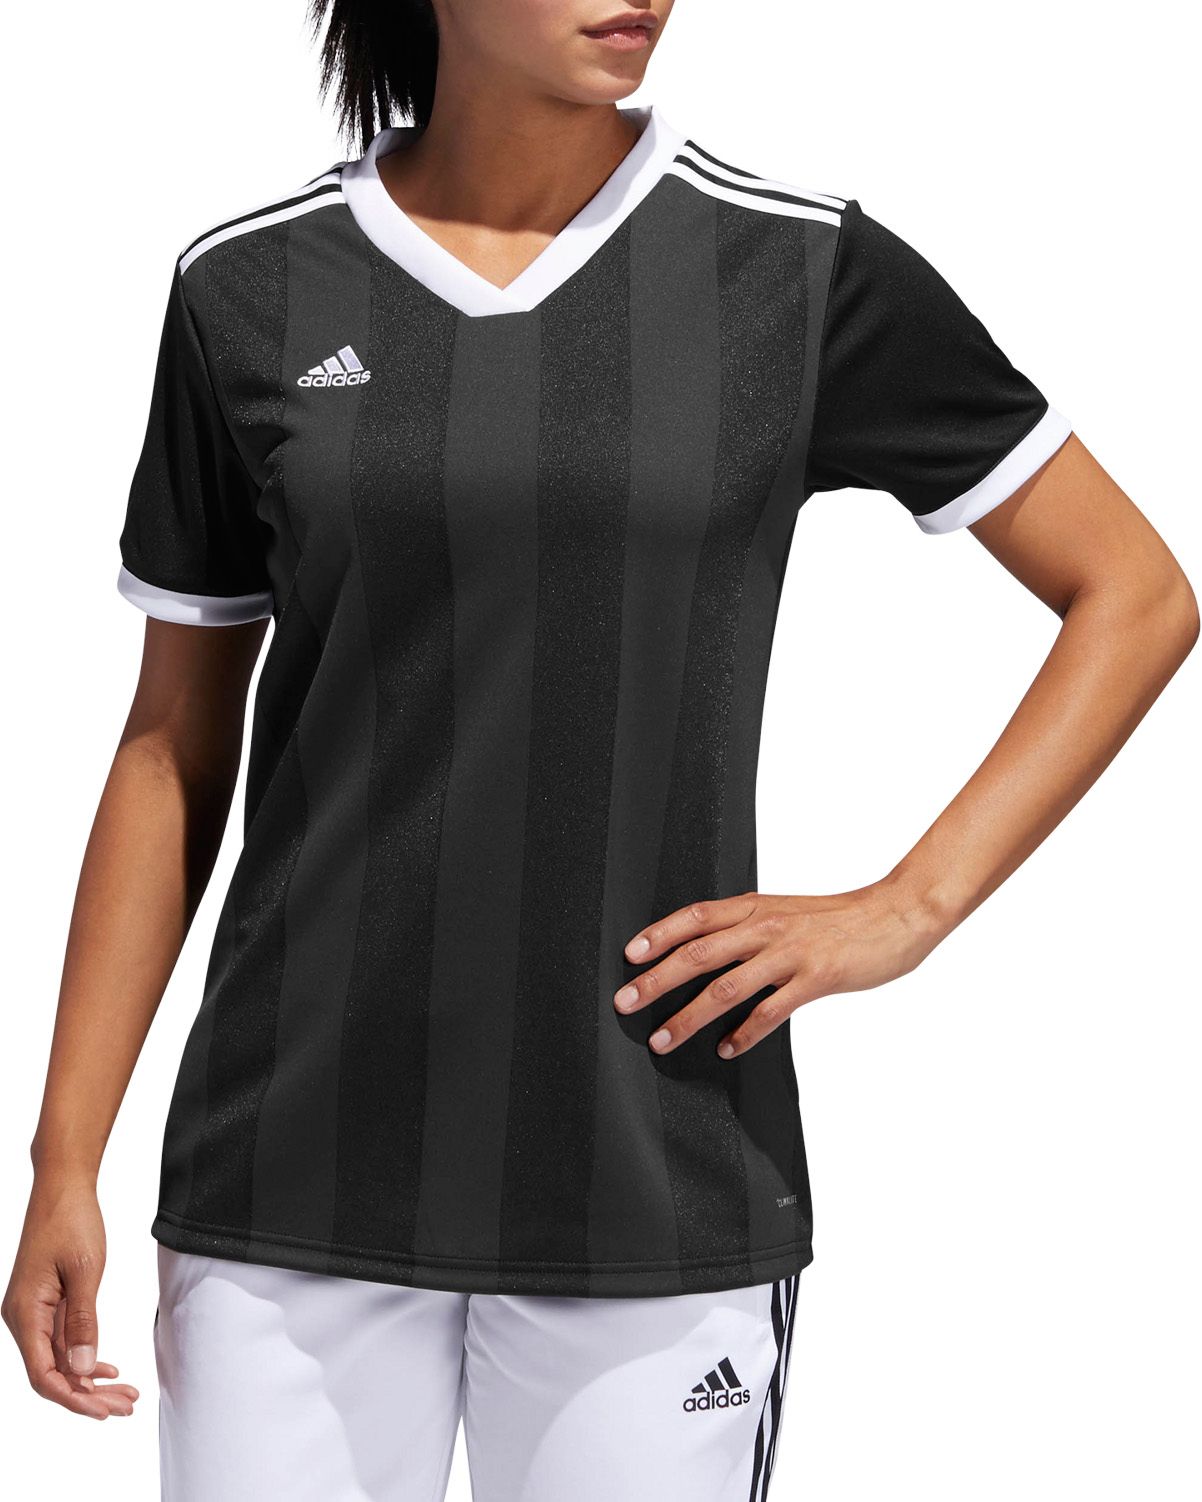 adidas Women's Tiro Soccer Jersey 